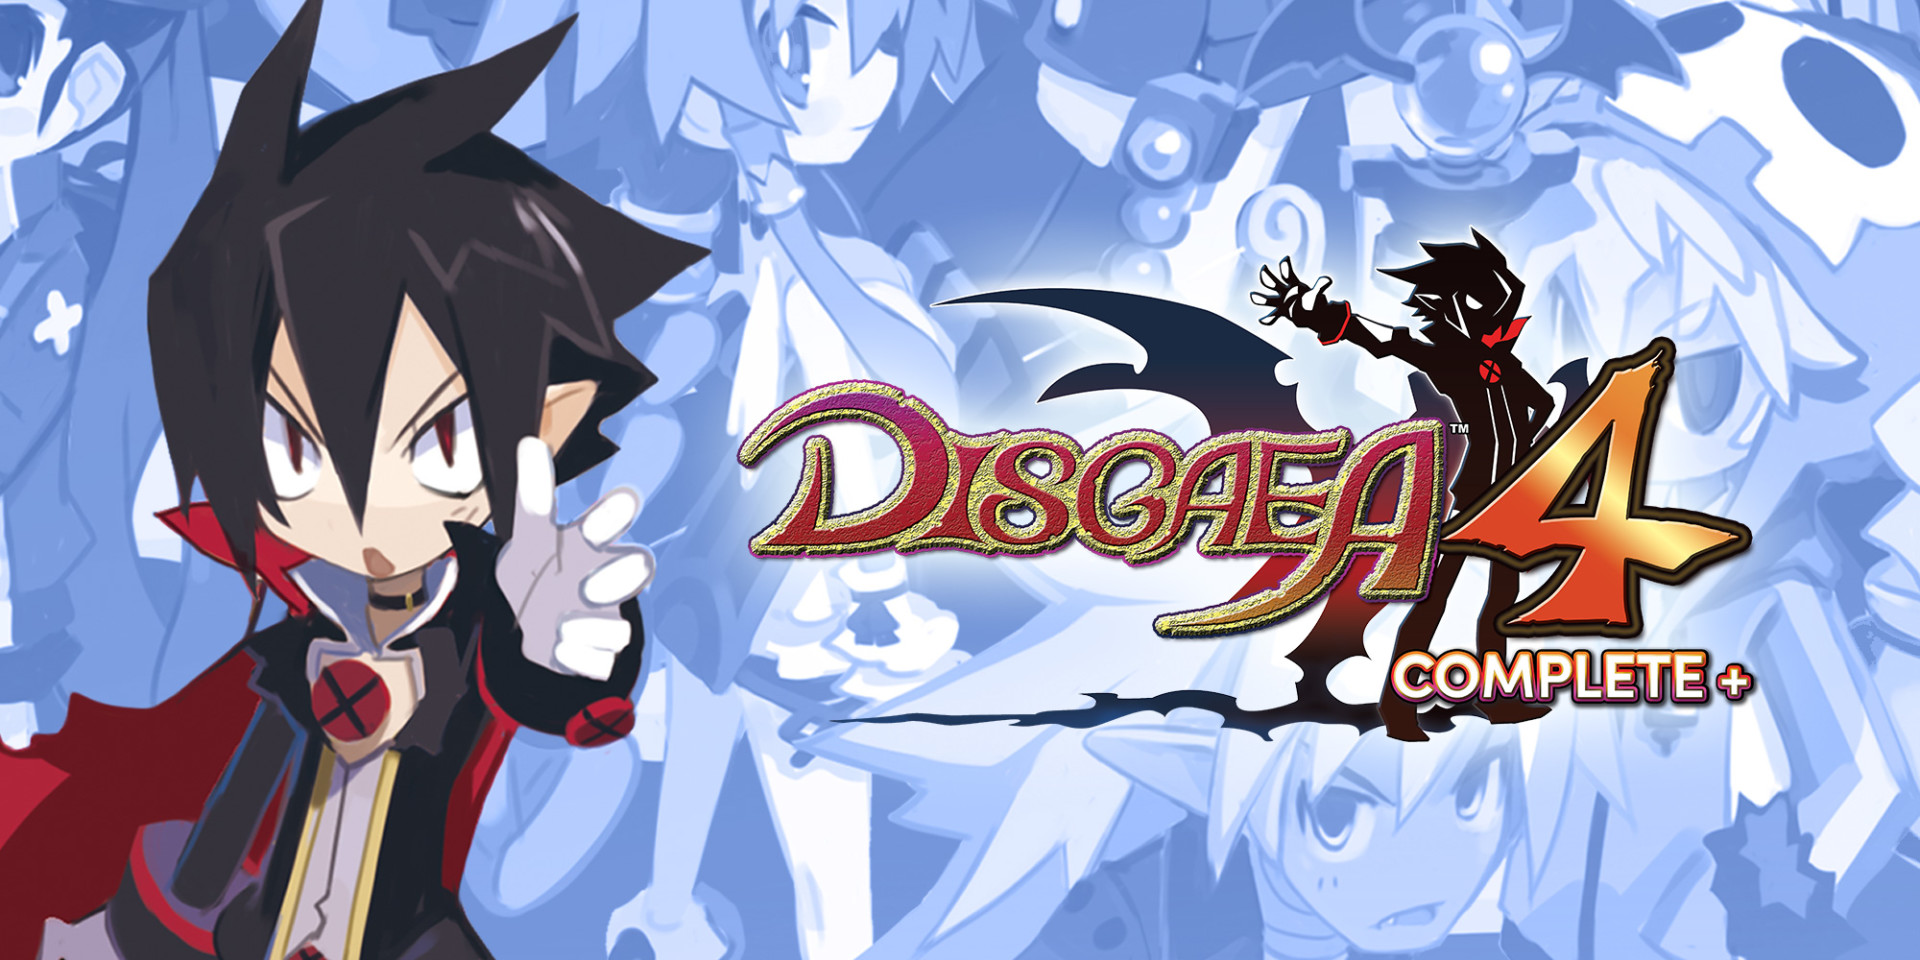 NIS America confirma que Disgaea 4 Complete+ tendrá su versión en PC